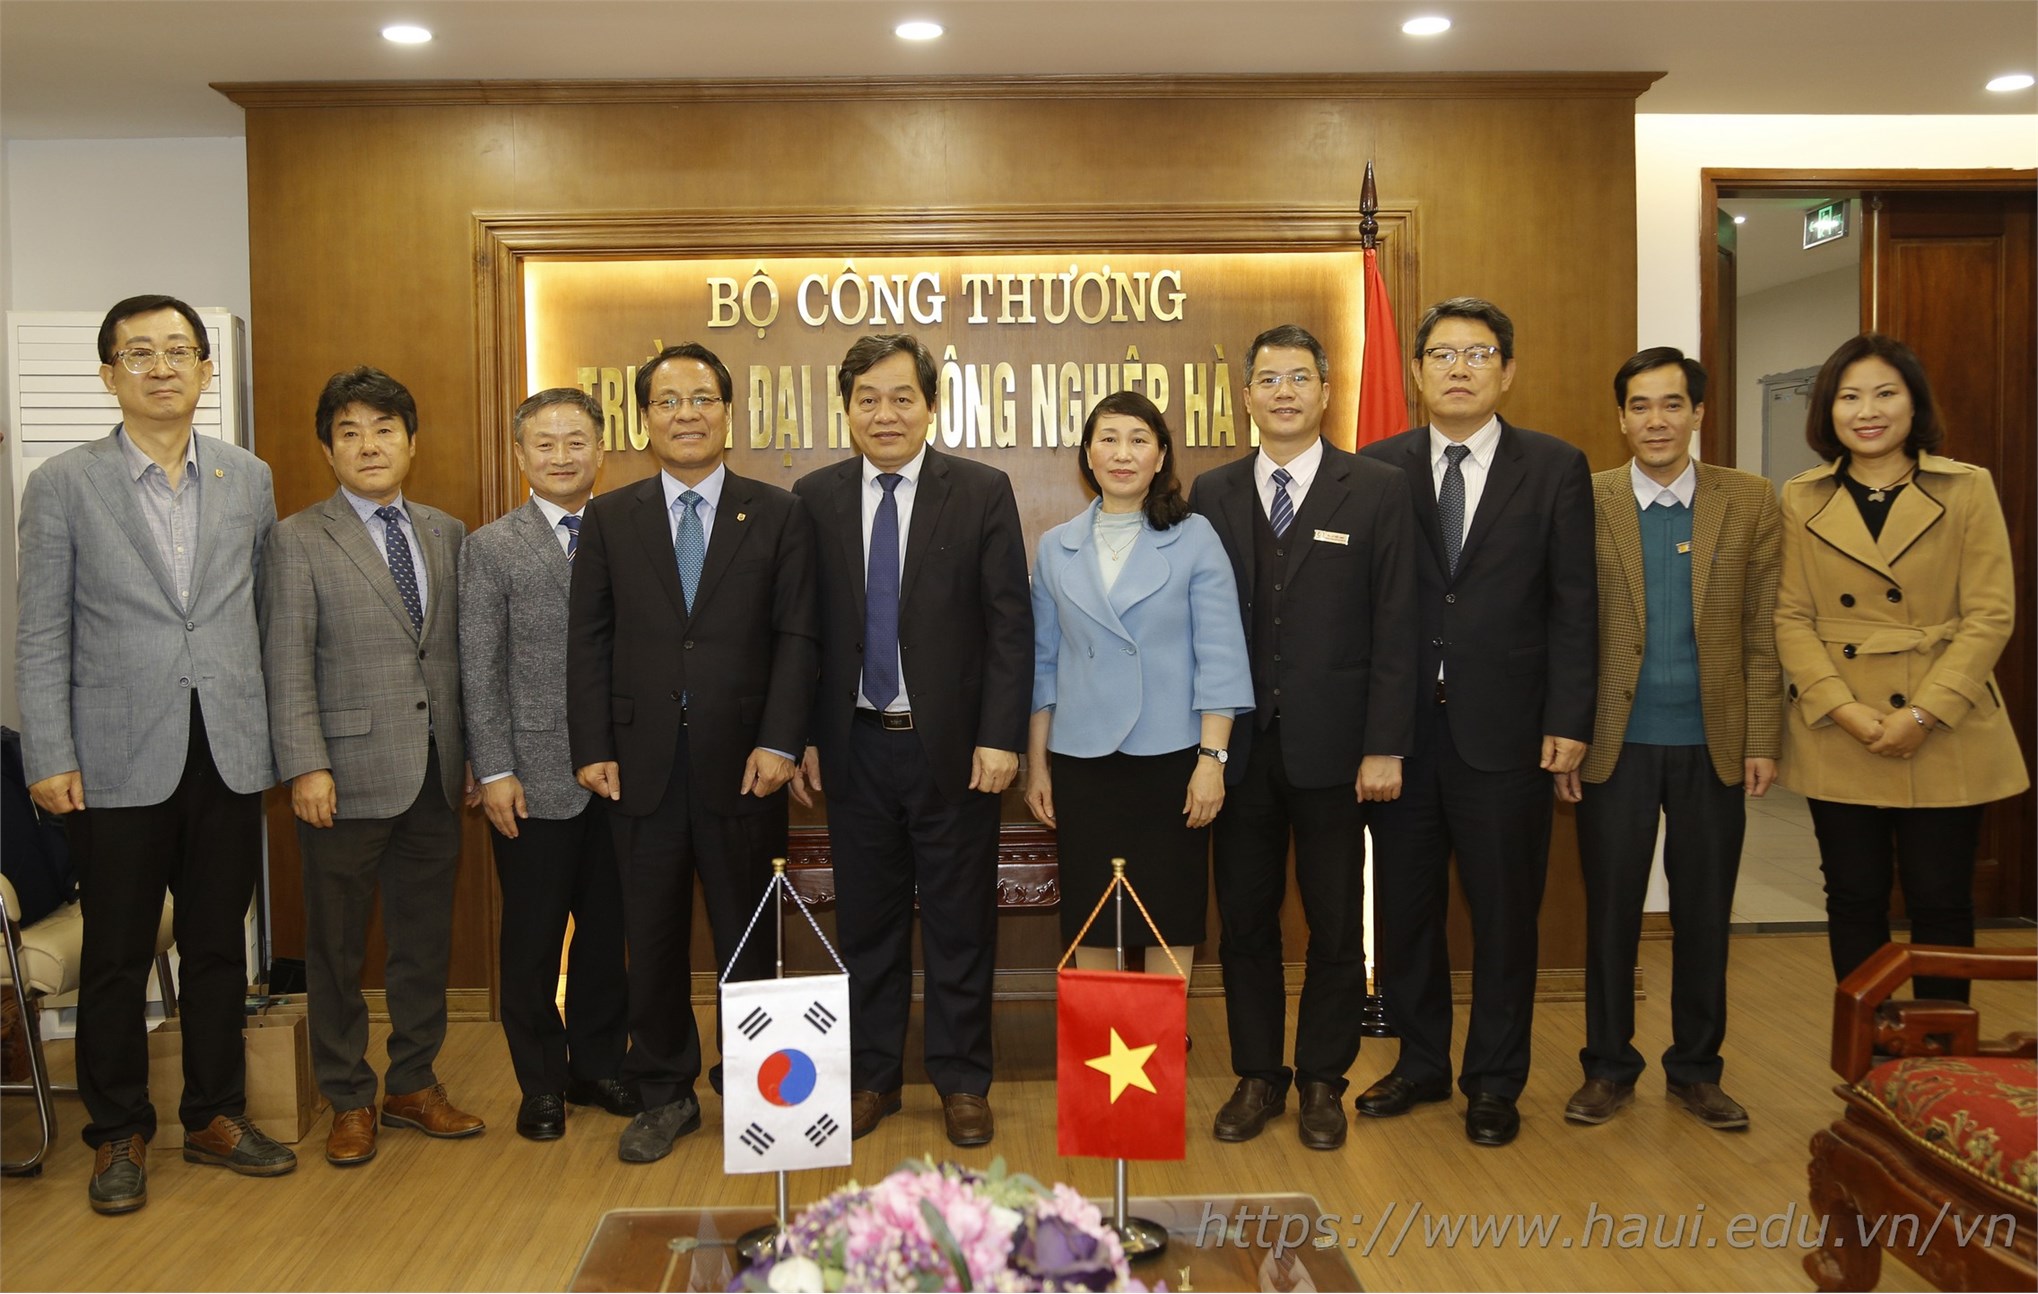 Trường Đại học Hannam, Hàn Quốc đến thăm và làm việc với Trường Đại học Công nghiệp Hà Nội